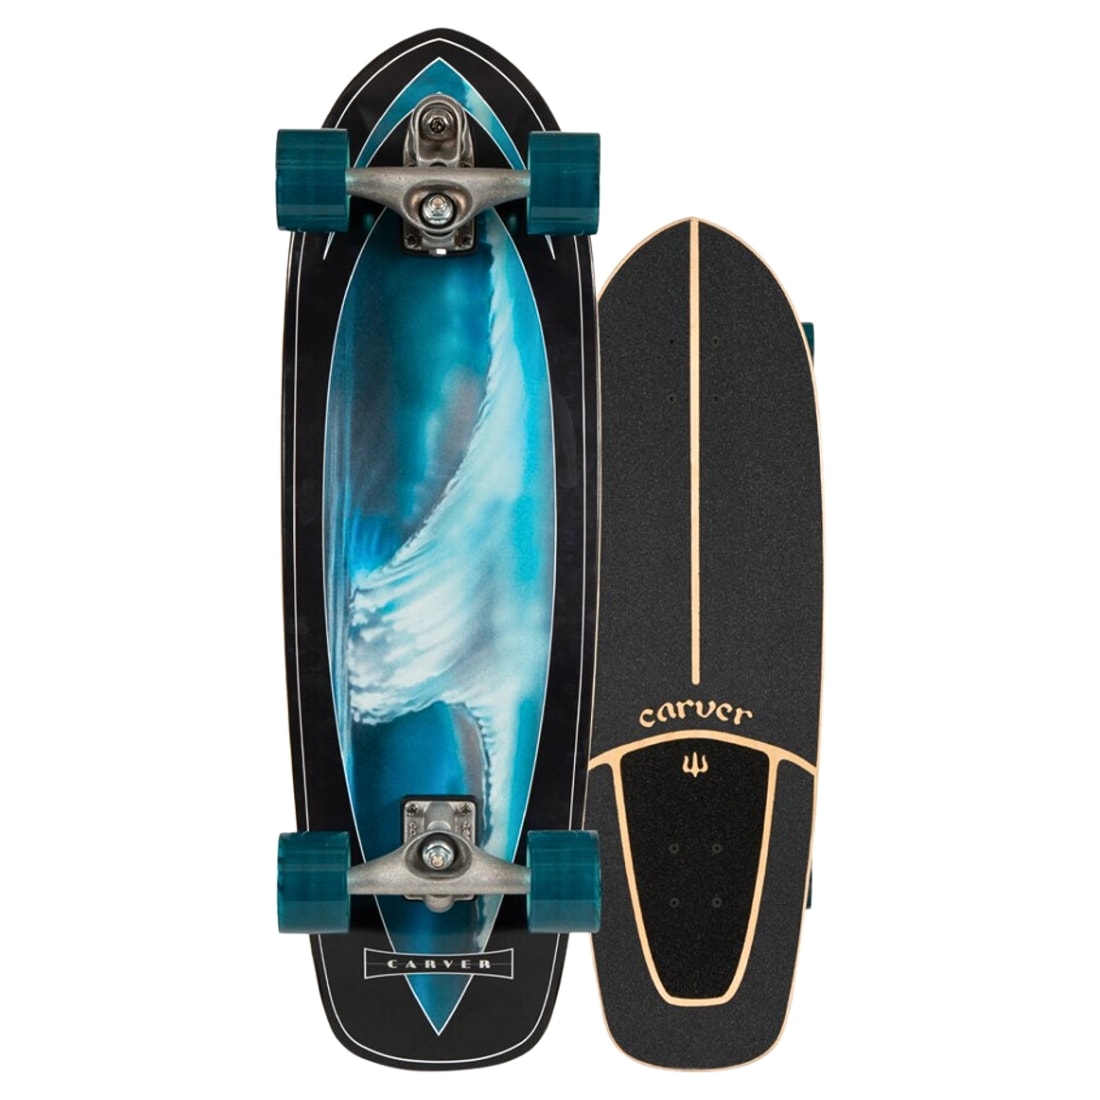 Carver Super Surfer 32" Surf Skateboard C7 Trucks - Black/Blue - Surf Skateboard by Carver 32 inch